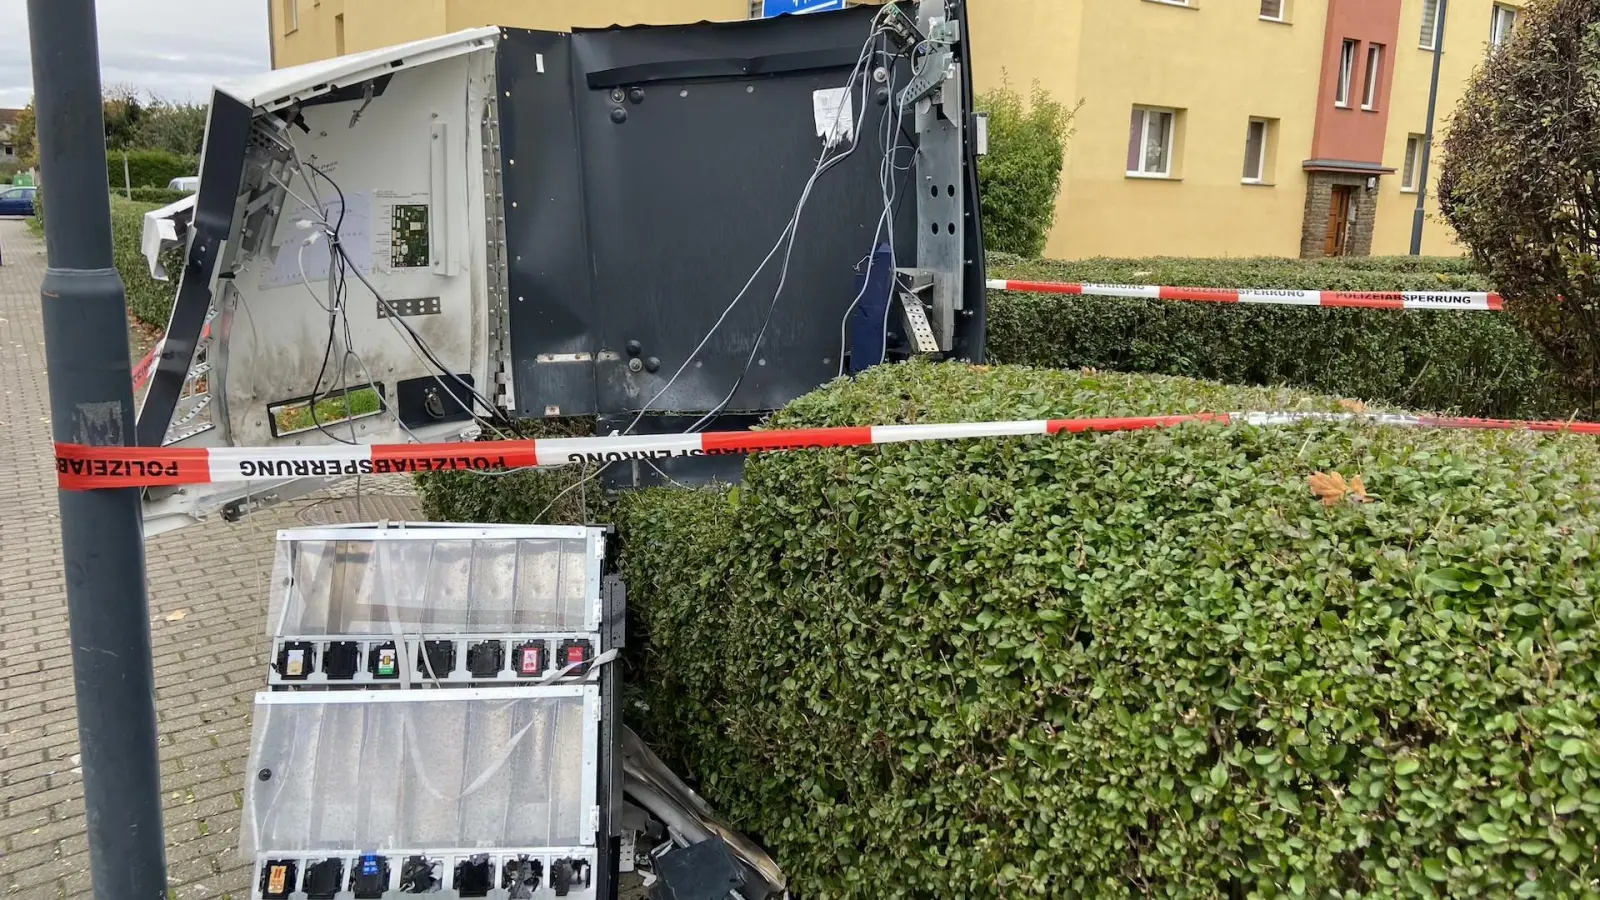 Die Trümmer des Automaten wurden gesichert und der Automat abgesperrt. (Foto: taucha-kompakt.de)